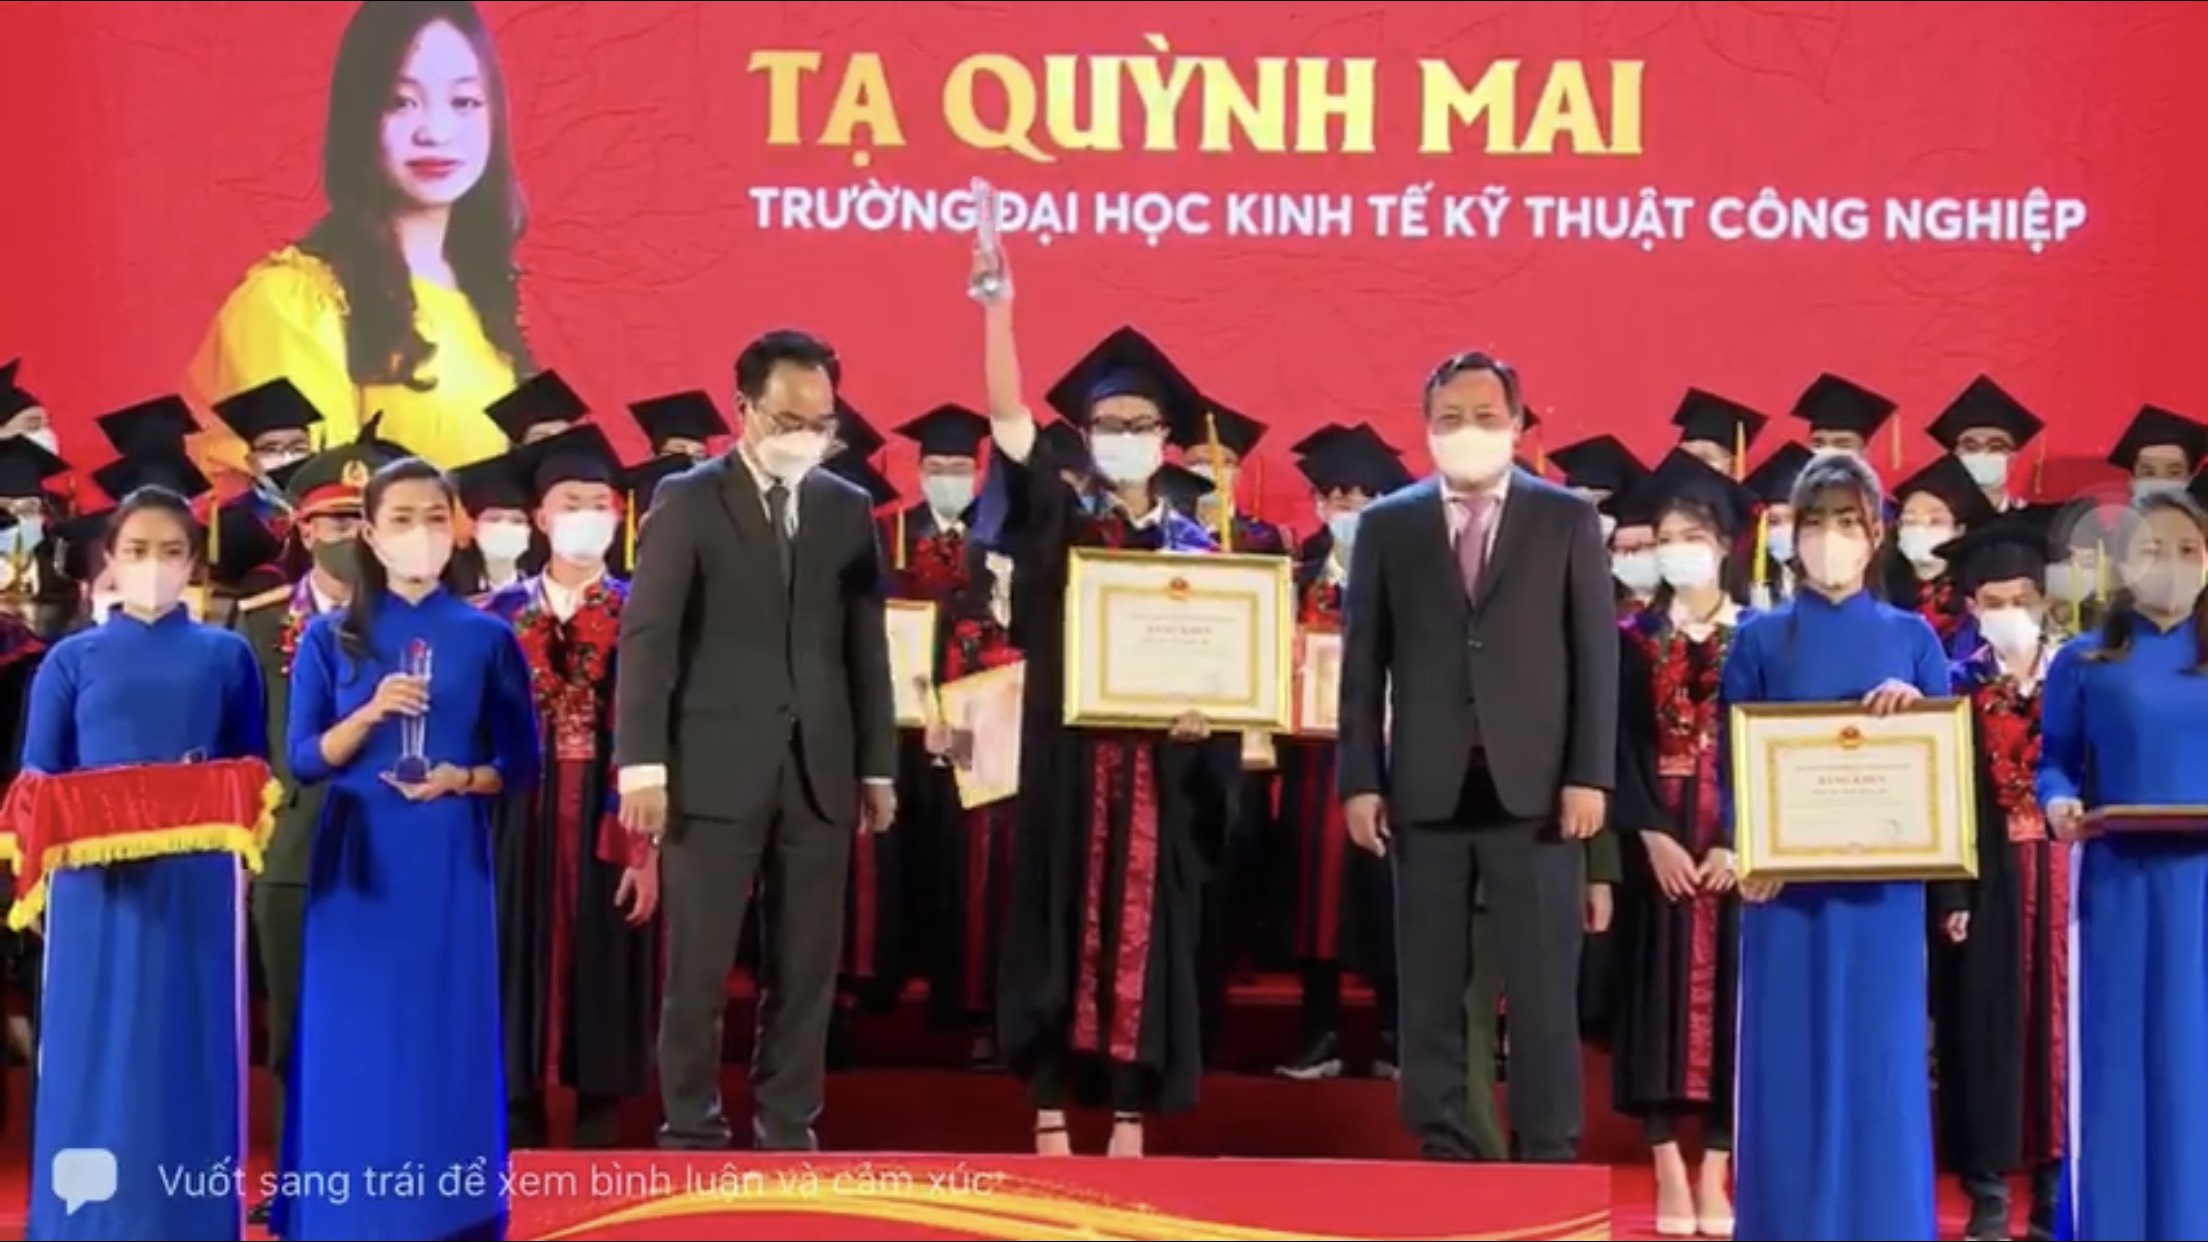 Sinh viên Tạ Quỳnh Mai – ĐHQTKD11A5HN vinh dự được vinh danh tại Văn Miếu Quốc Tử Giám vào tối ngày 18/11/2021 trong “Lễ tuyên dương thủ khoa xuất sắc tốt nghiệp các trường đại học, học viện trên địa bàn thành phố Hà Nội năm 2021”